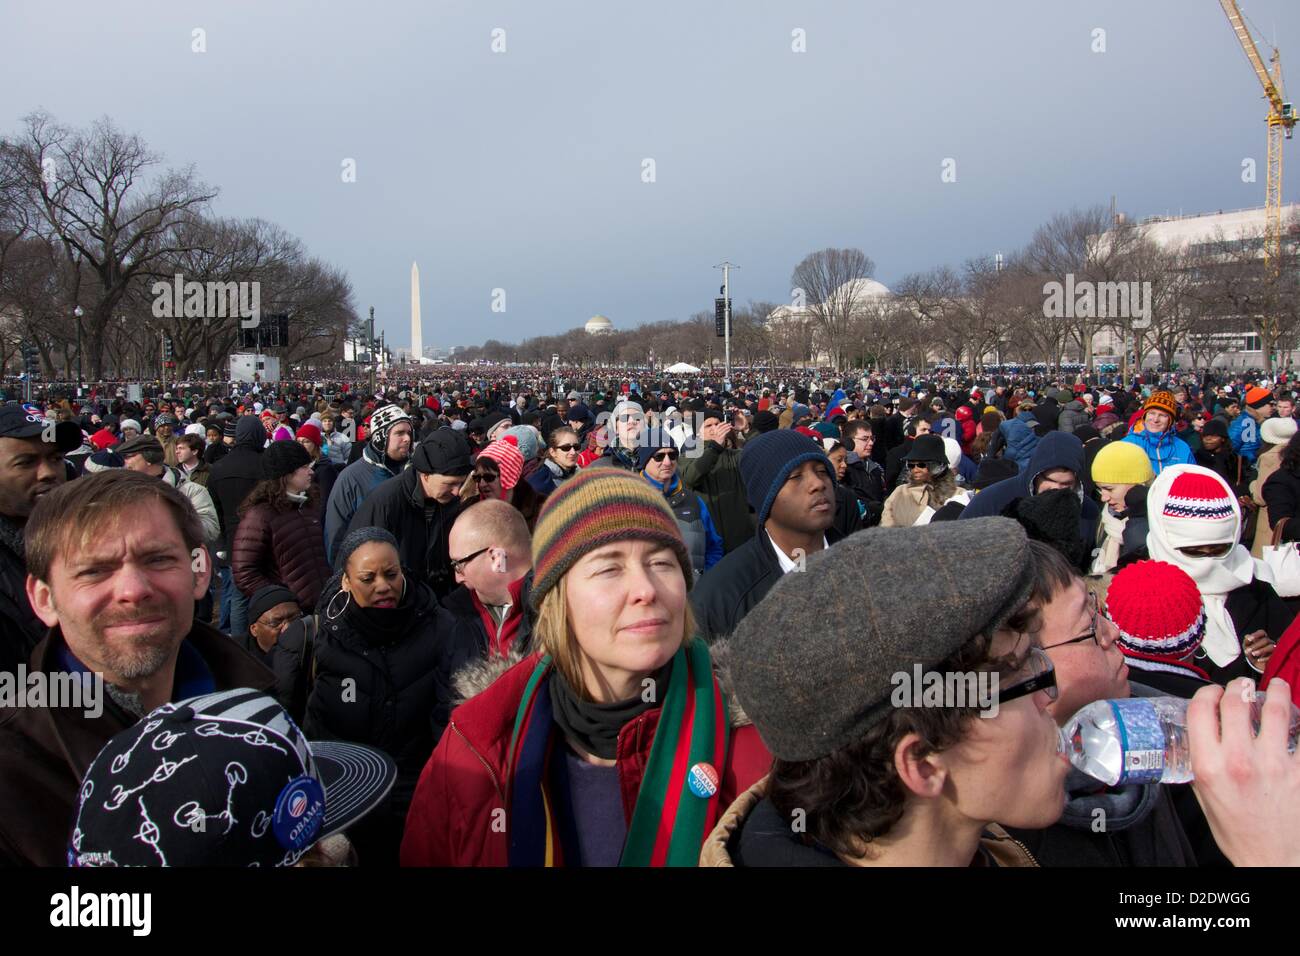 Washington DC. Le 21 janvier 2013, une grande foule se rassemble sur le National Mall pour la cérémonie inaugurale. Le président Barack Obama, a officiellement prêté serment pour un deuxième mandat hier en raison d'une exigence constitutionnelle, prend une cérémonie de prestation de serment aujourd'hui. Banque D'Images